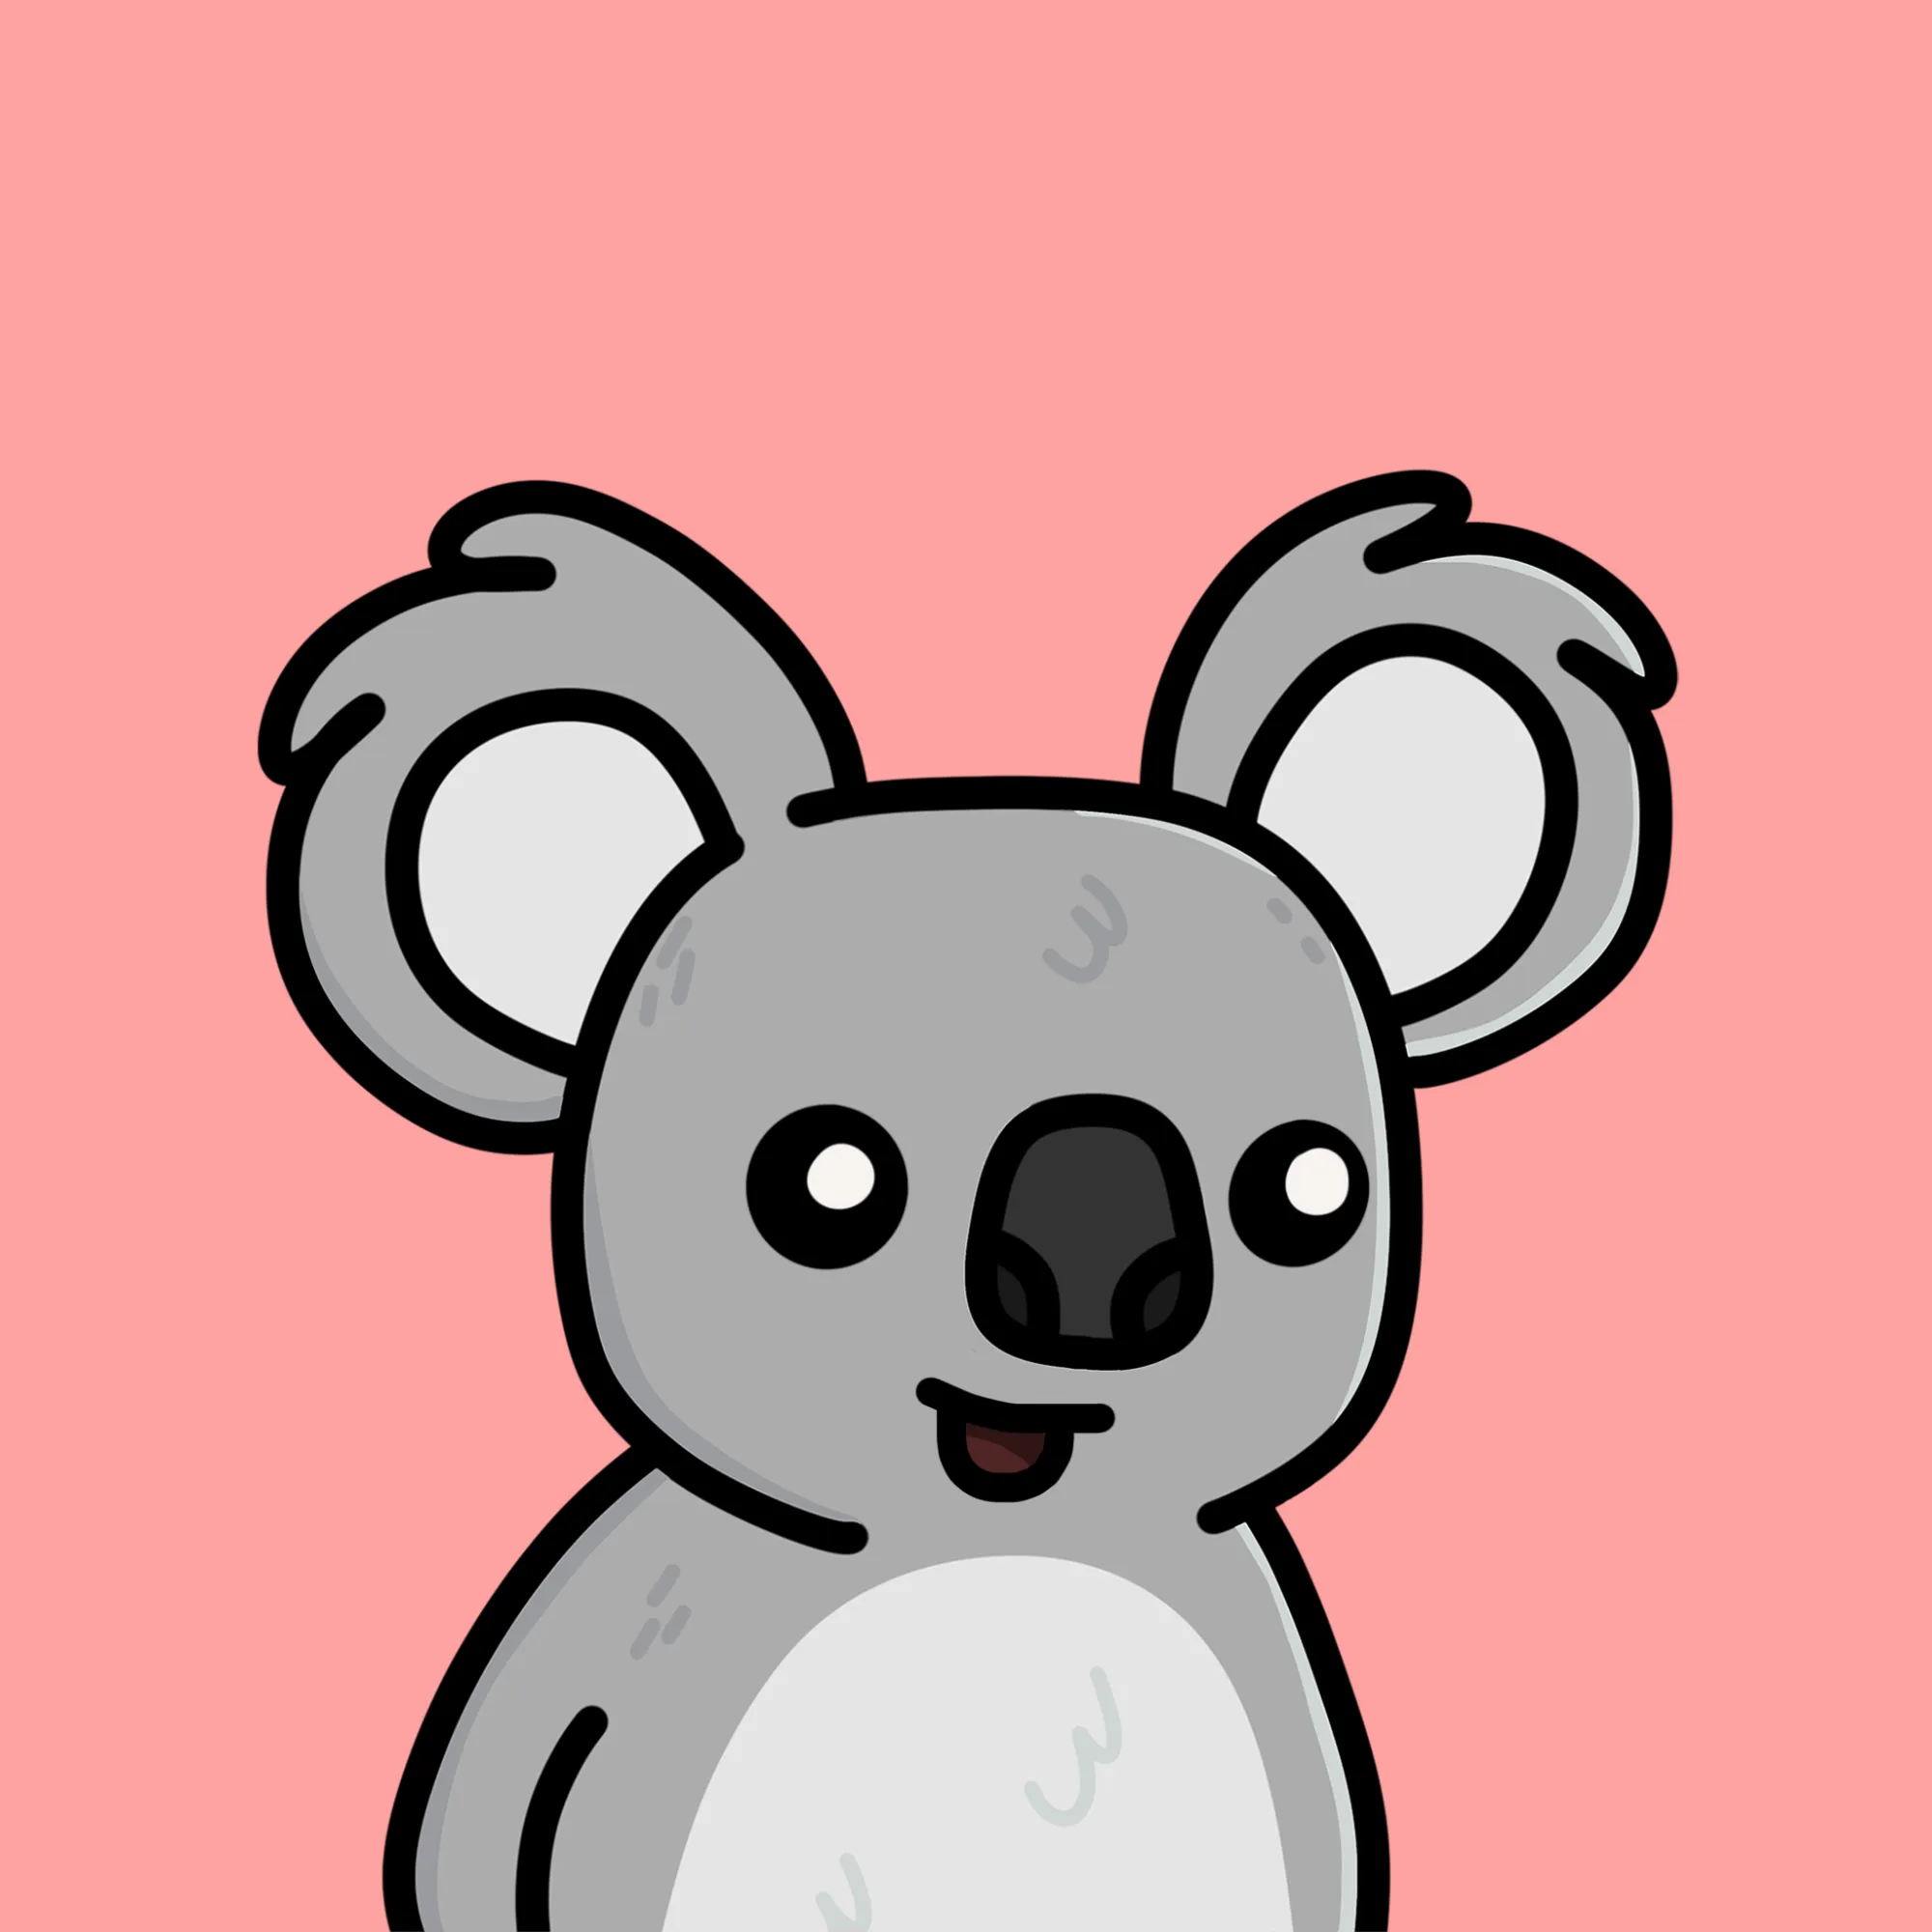 KoalaDay